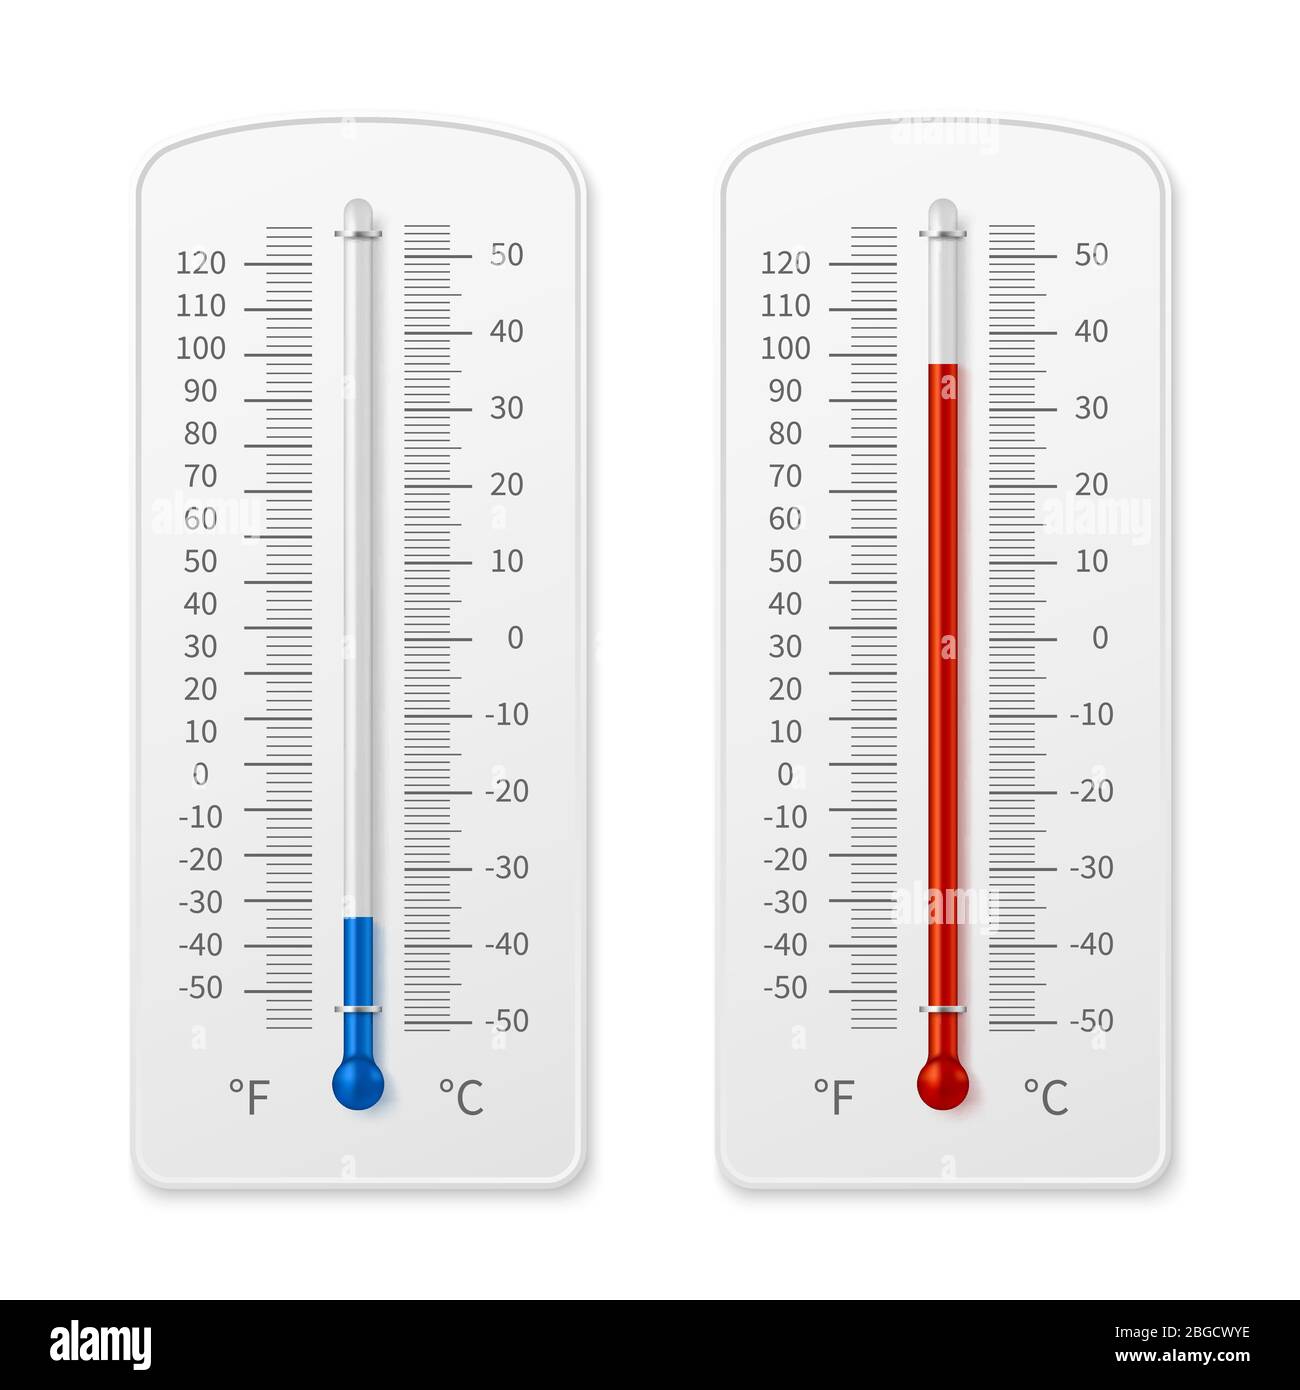 Meteorologie Innenthermometer realistische Vektorgrafik isoliert. Temperaturskala Instrument, Thermometer für Wetter Stock Vektor